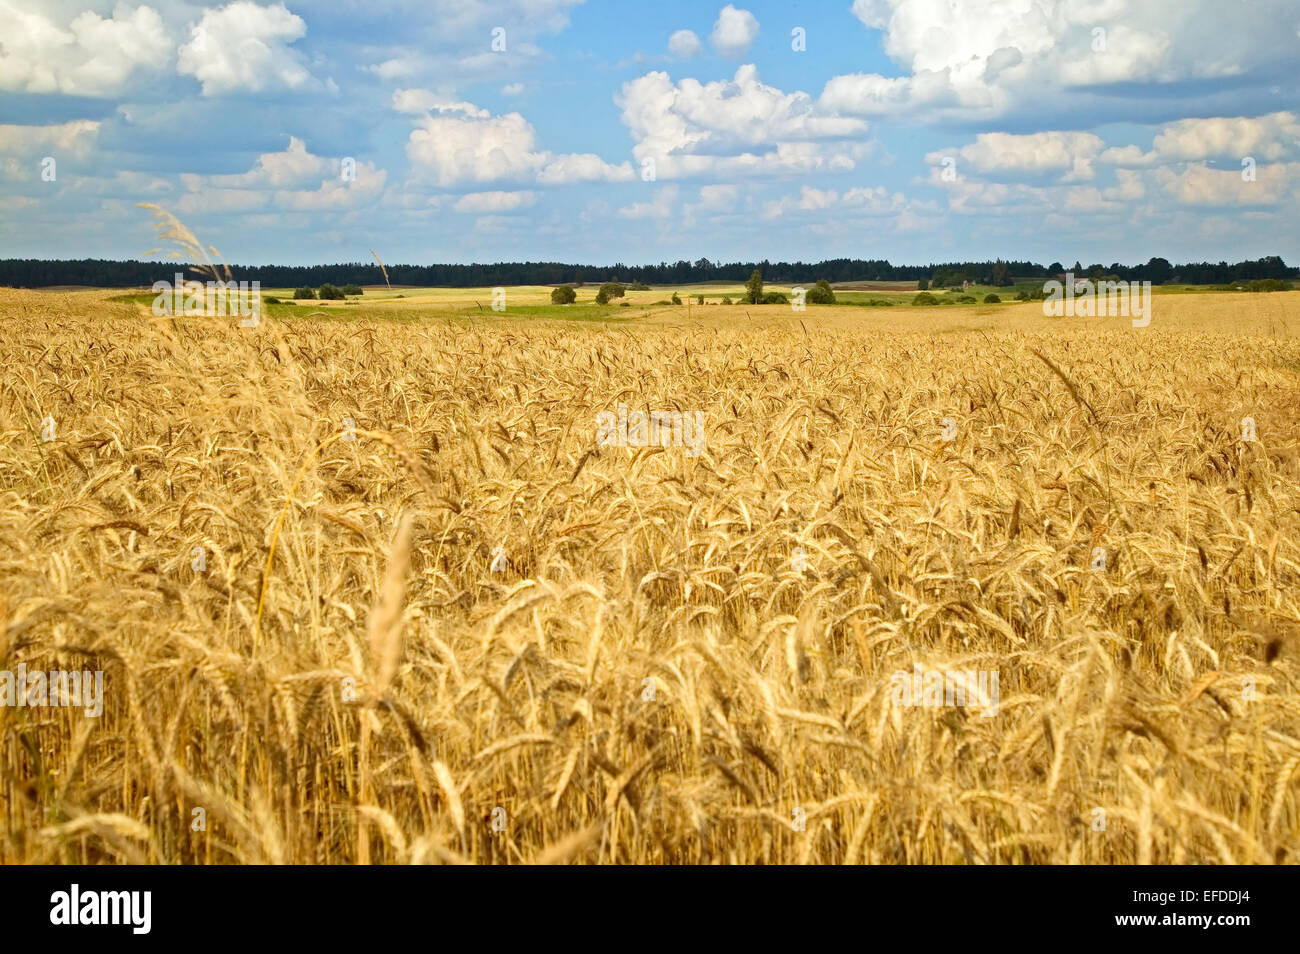 A golden wead field landscape in autumn Stock Photo